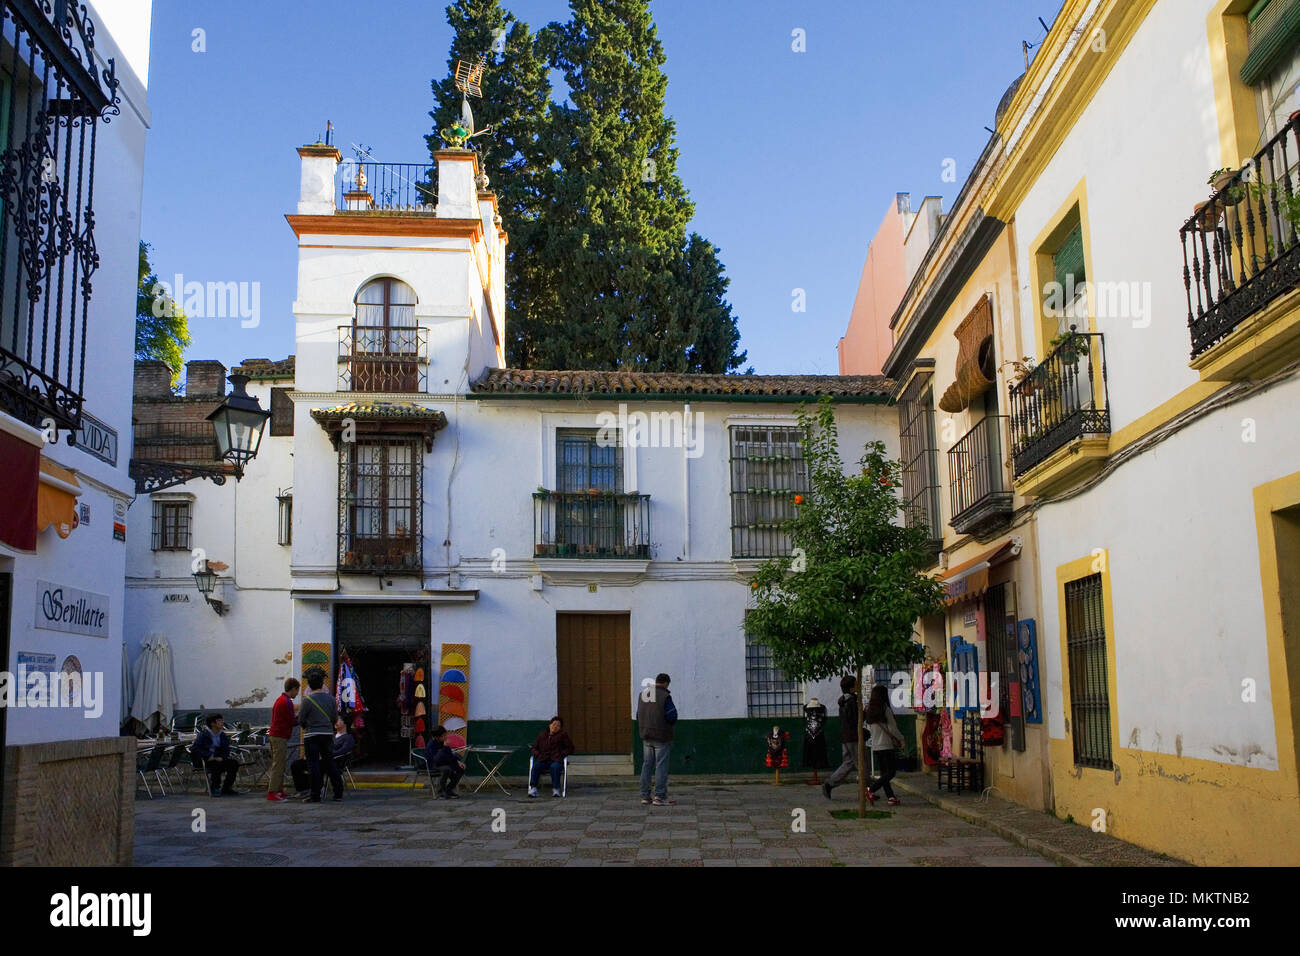 A small square (Calle Vida) in Barrio de Santa Cruz, Sevilla, Andalusia, Spain Stock Photo